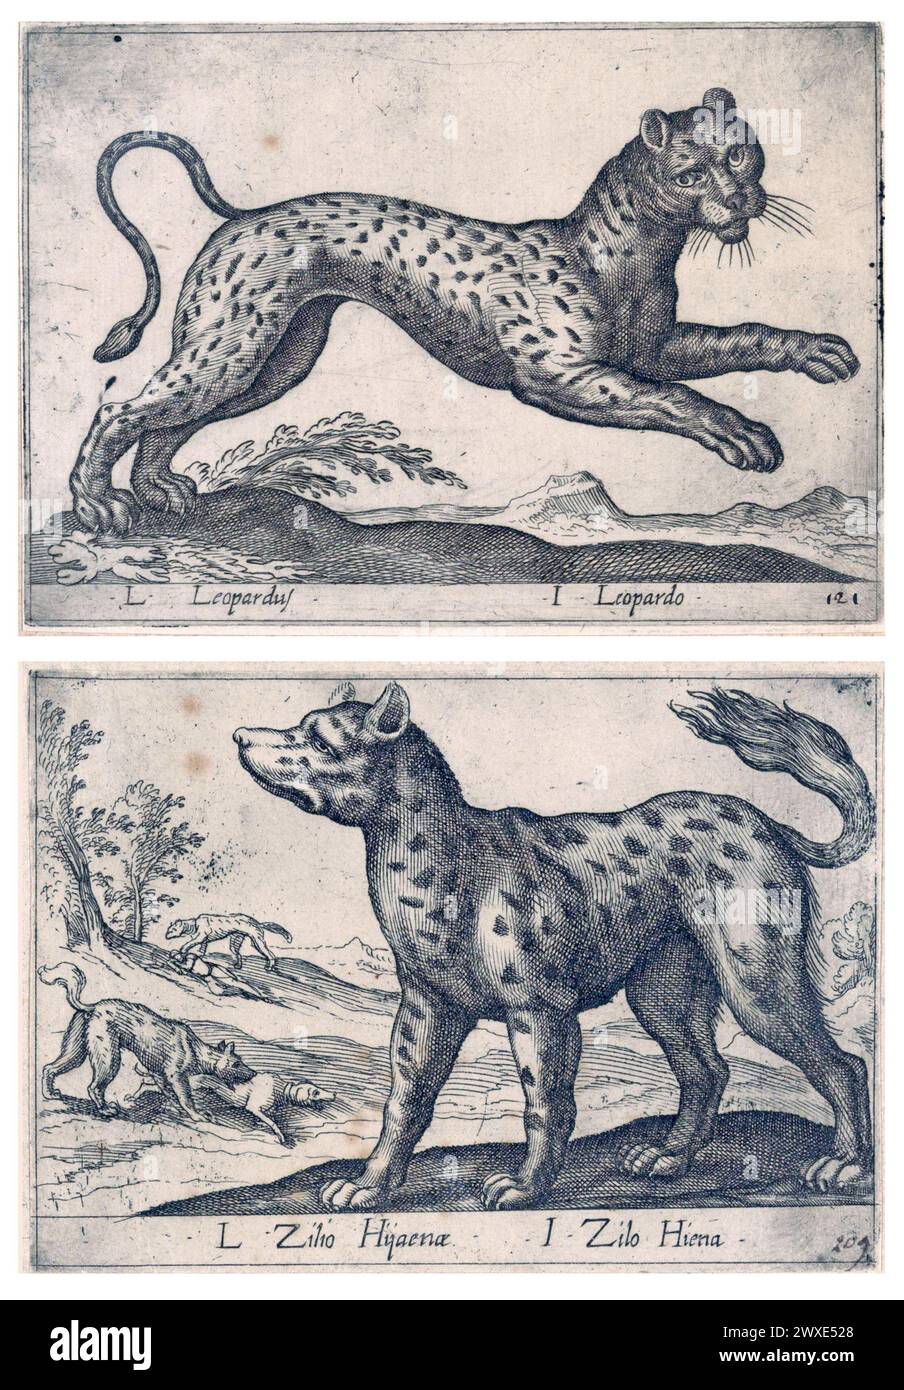 Zwei antike Drucke auf Papier, die Raubtiere und Raubtiere darstellen: Leopard und Hyaena. Druckpapierätzungen von Antonio Tempesta, um 1650 Stockfoto